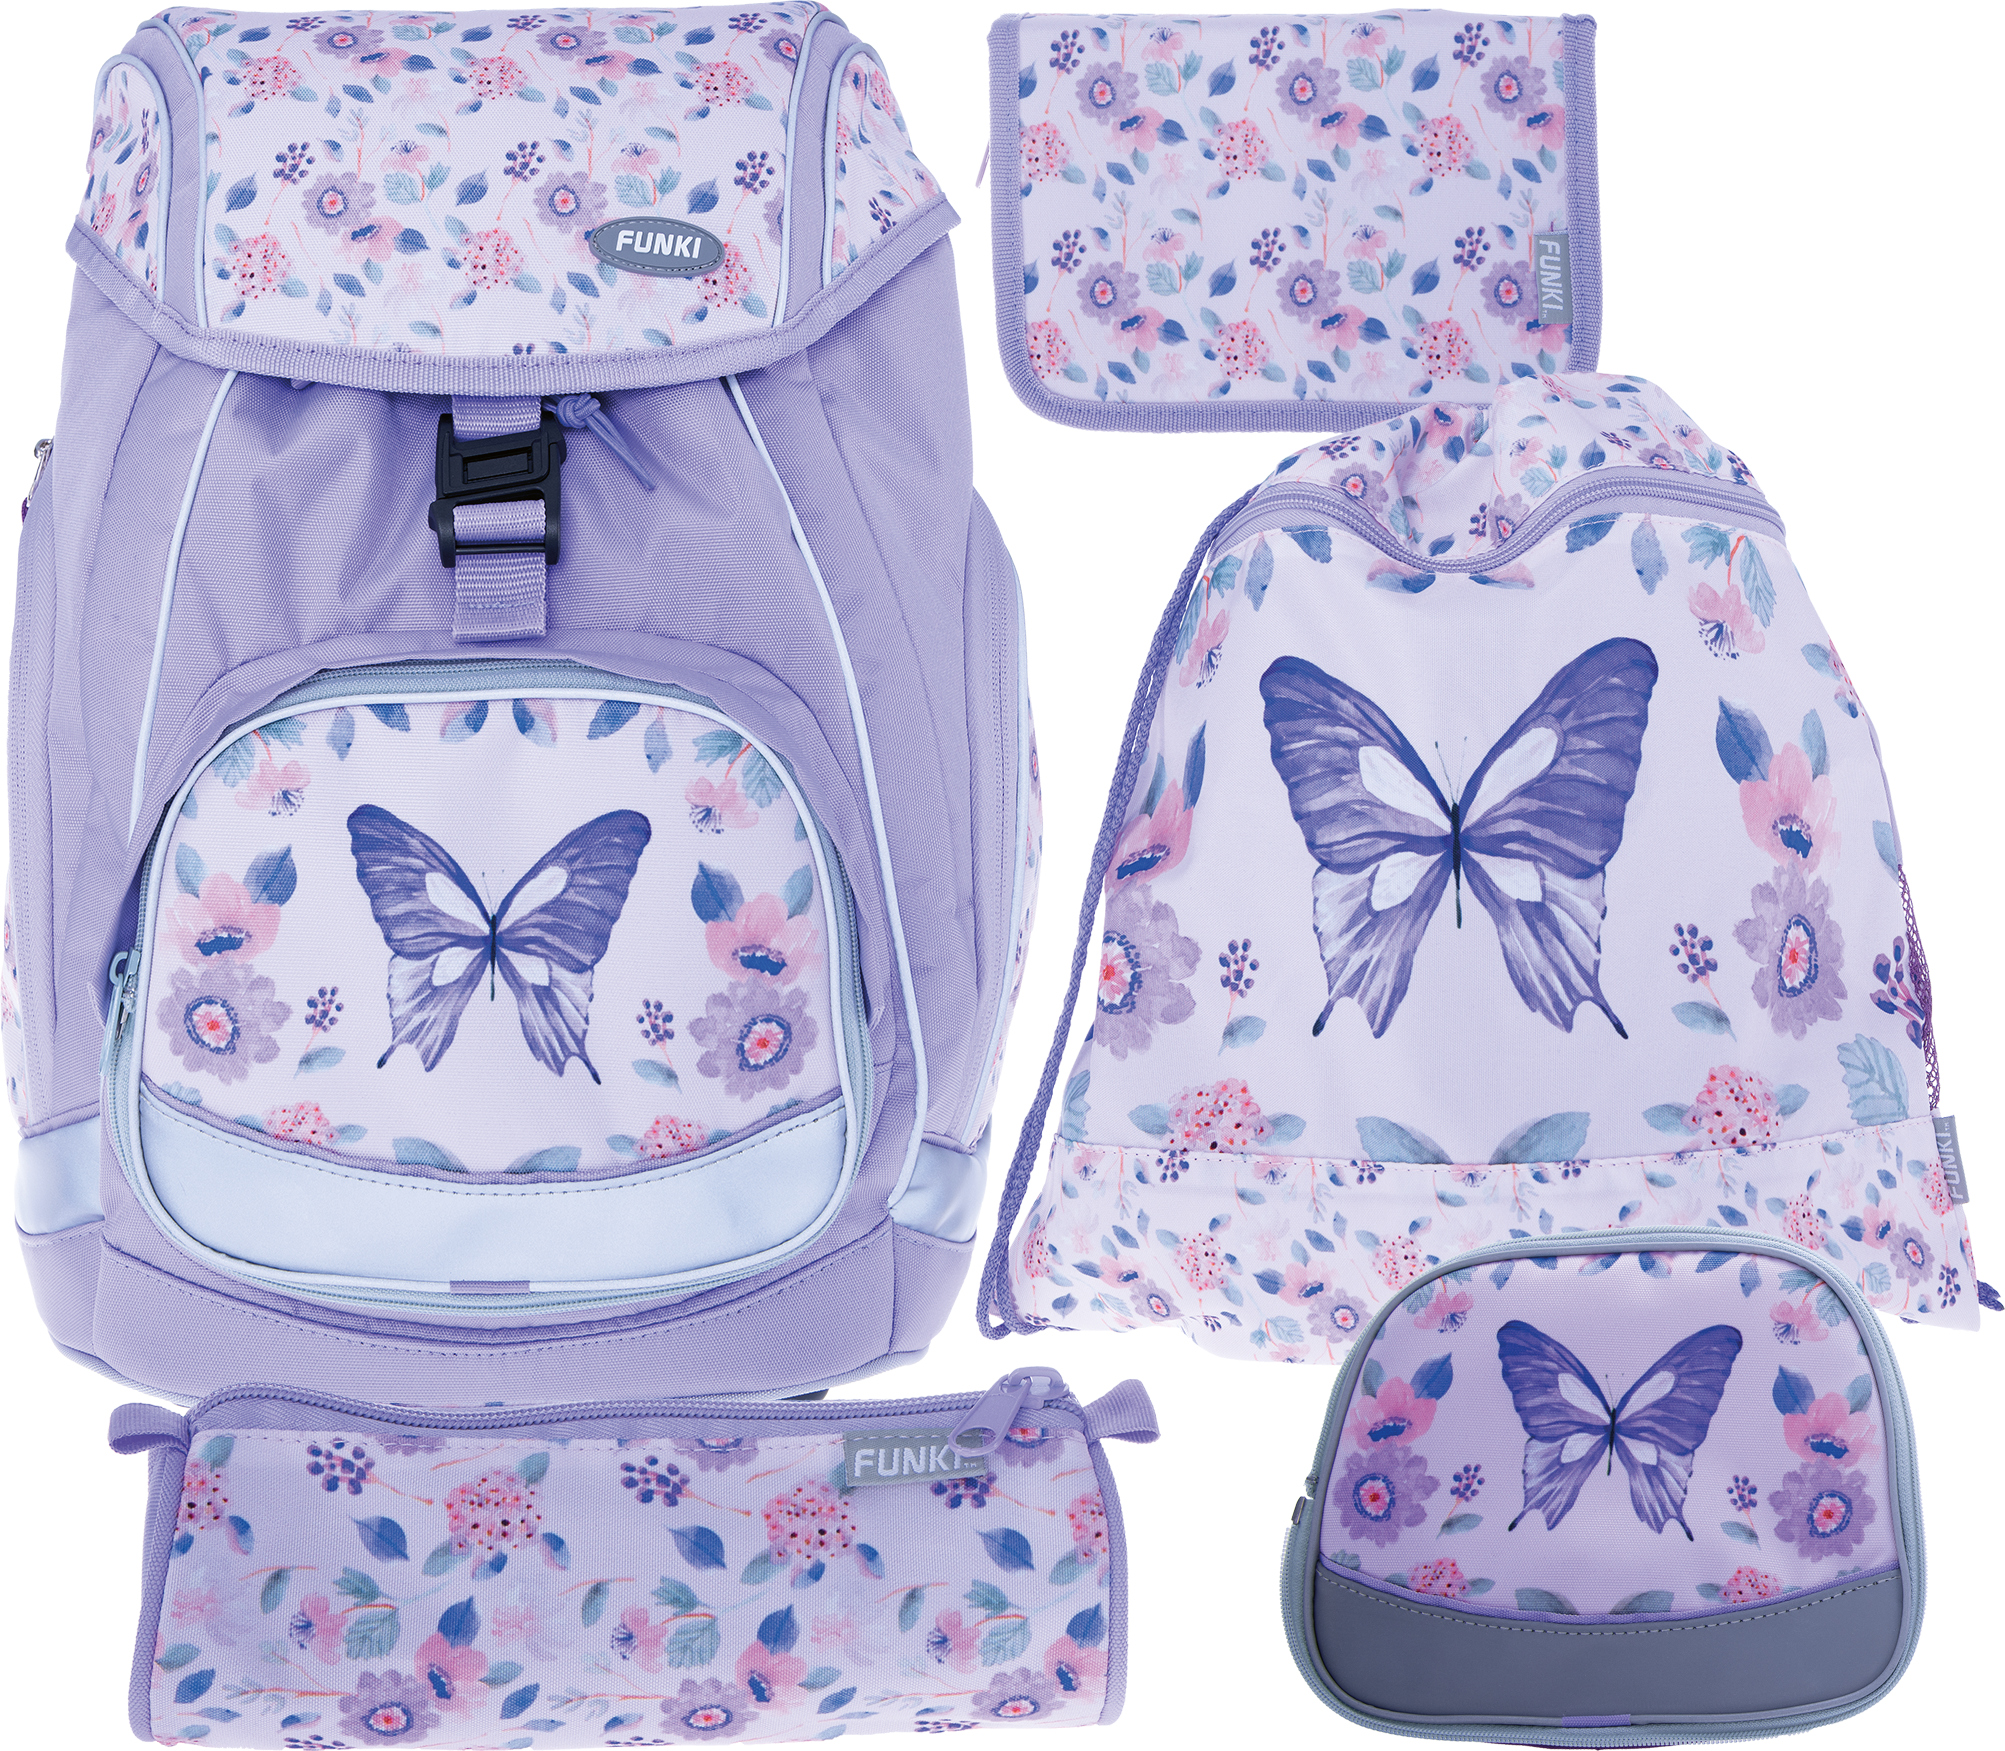 FUNKI Flexi-Bag Set Butterfly 6040.614 multicolor 5 pcs.